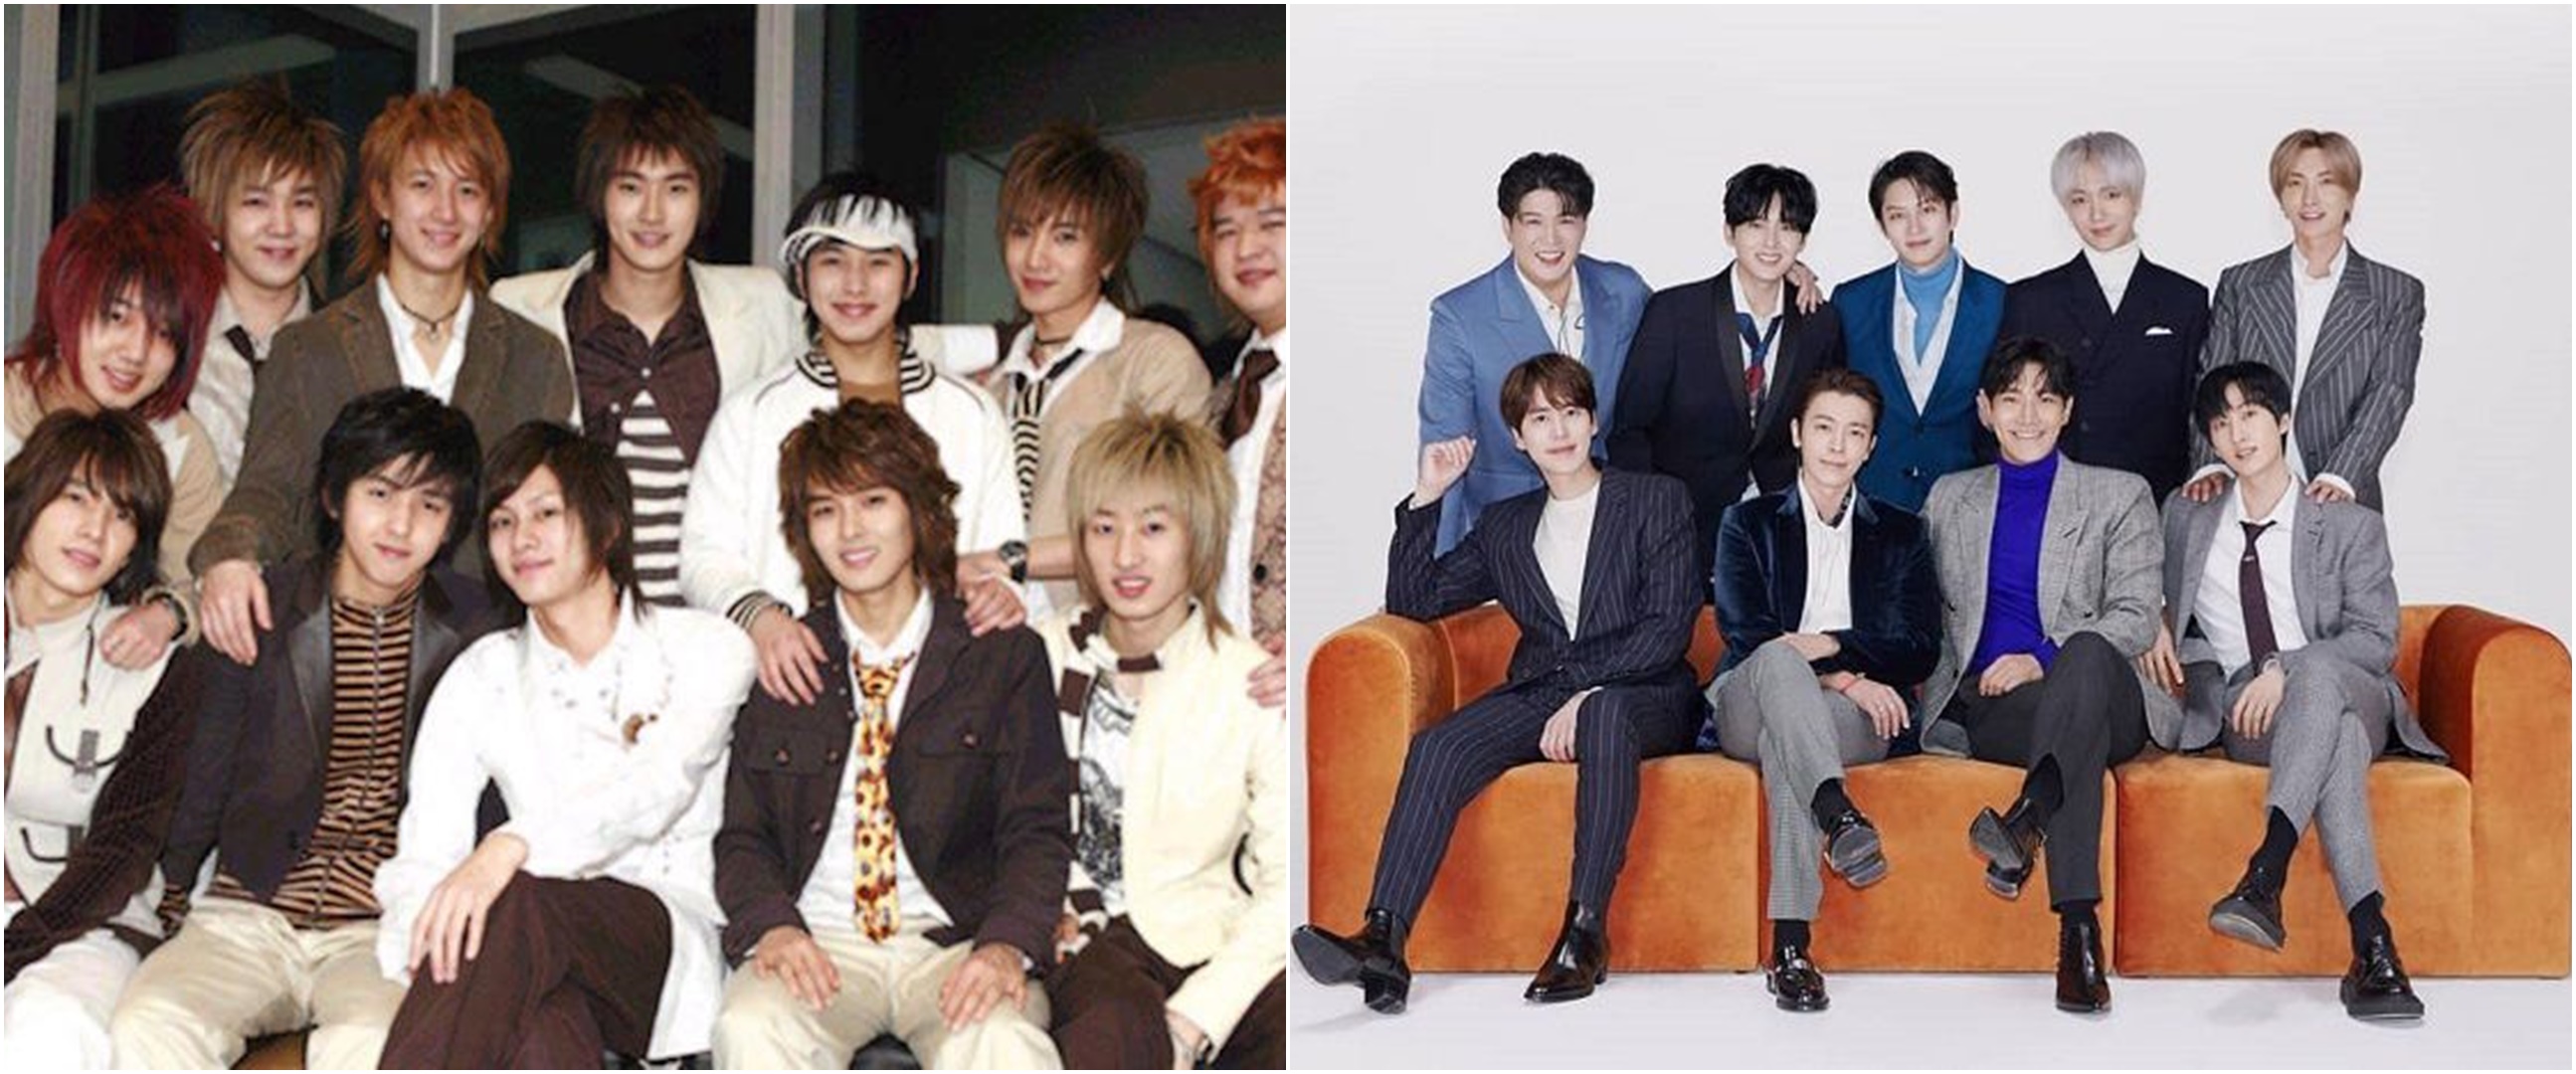 Anniversary 16 tahun, ini 7 kisah haru perjalanan karier Super Junior